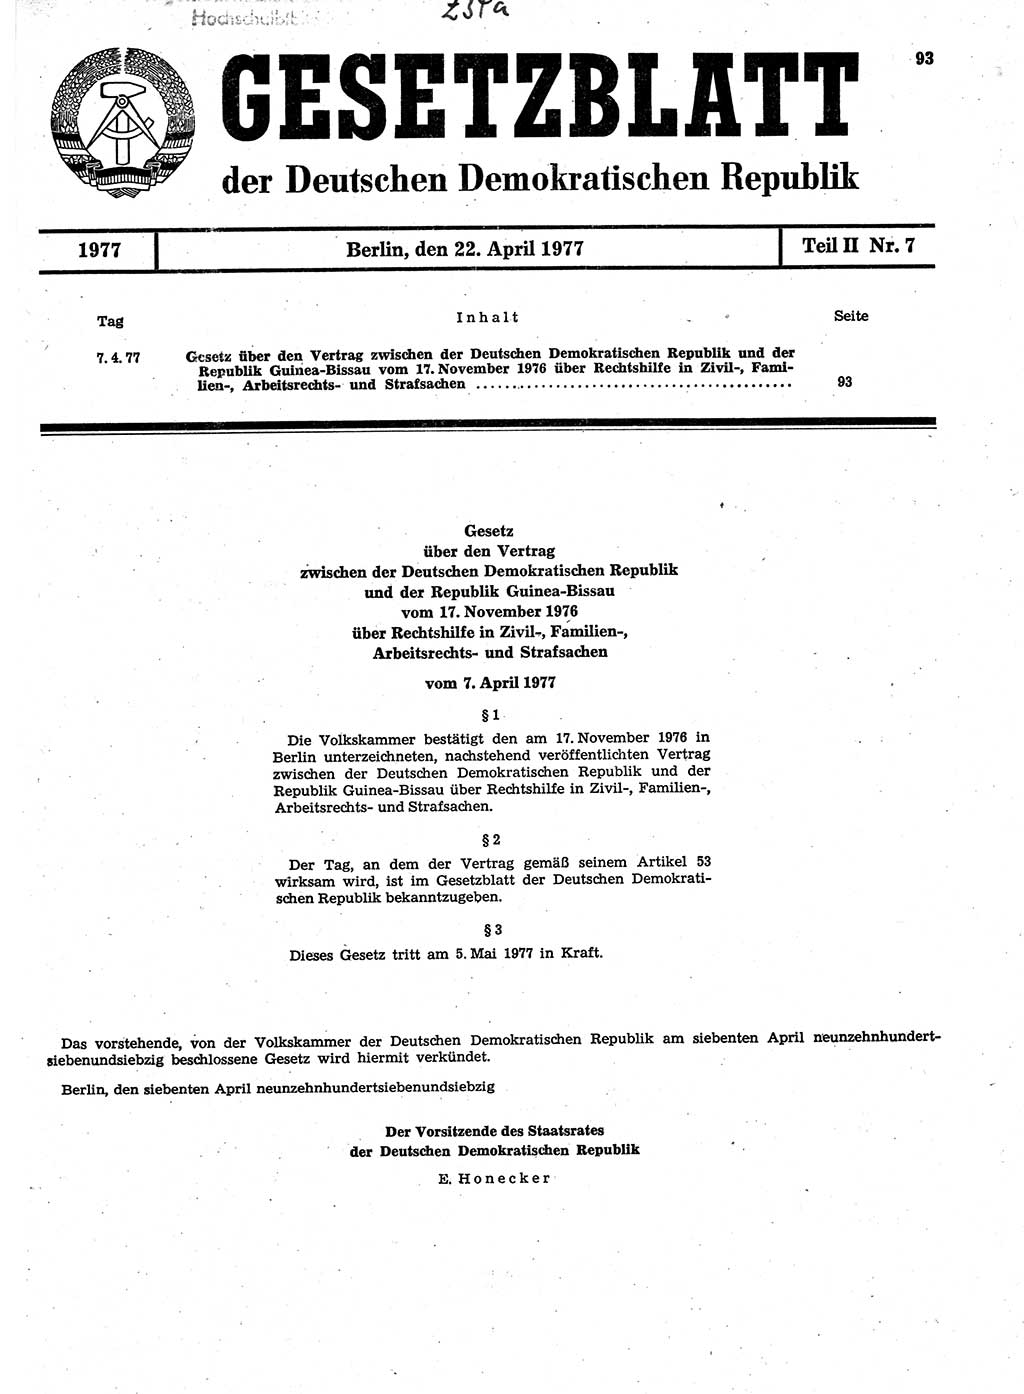 Gesetzblatt (GBl.) der Deutschen Demokratischen Republik (DDR) Teil ⅠⅠ 1977, Seite 93 (GBl. DDR ⅠⅠ 1977, S. 93)